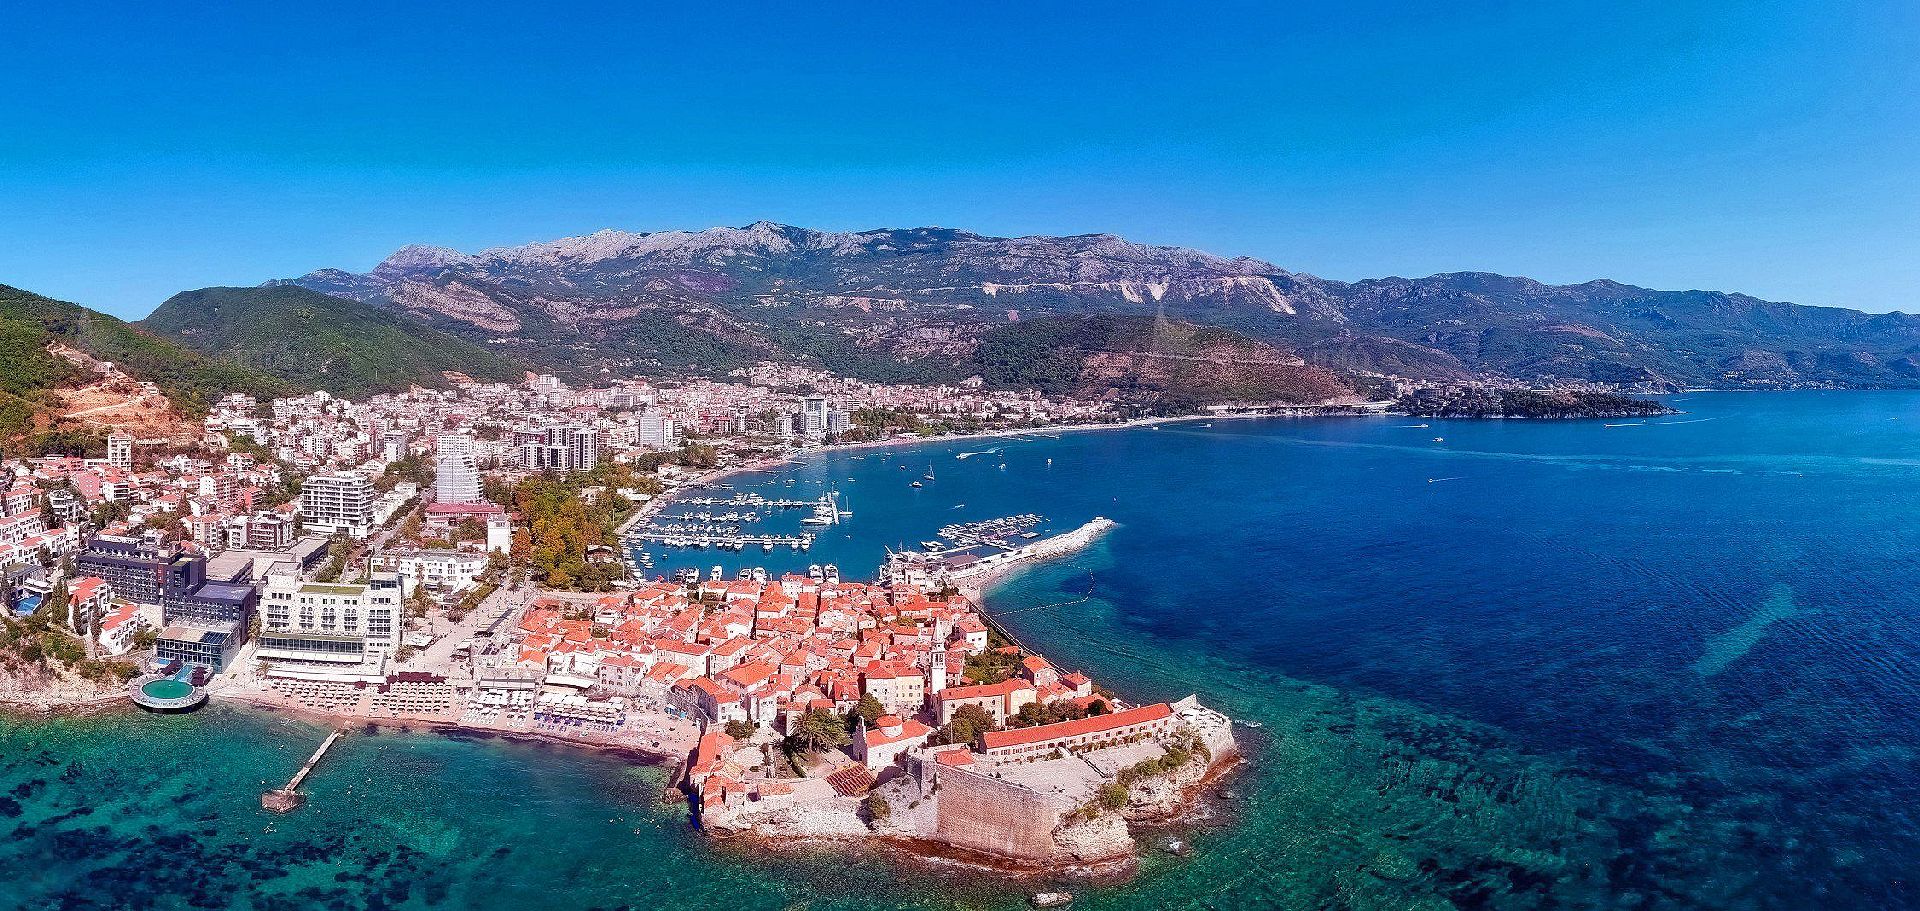 Курорты черногории 2020: в каком городе лучше отдыхать — блог сел и поехал